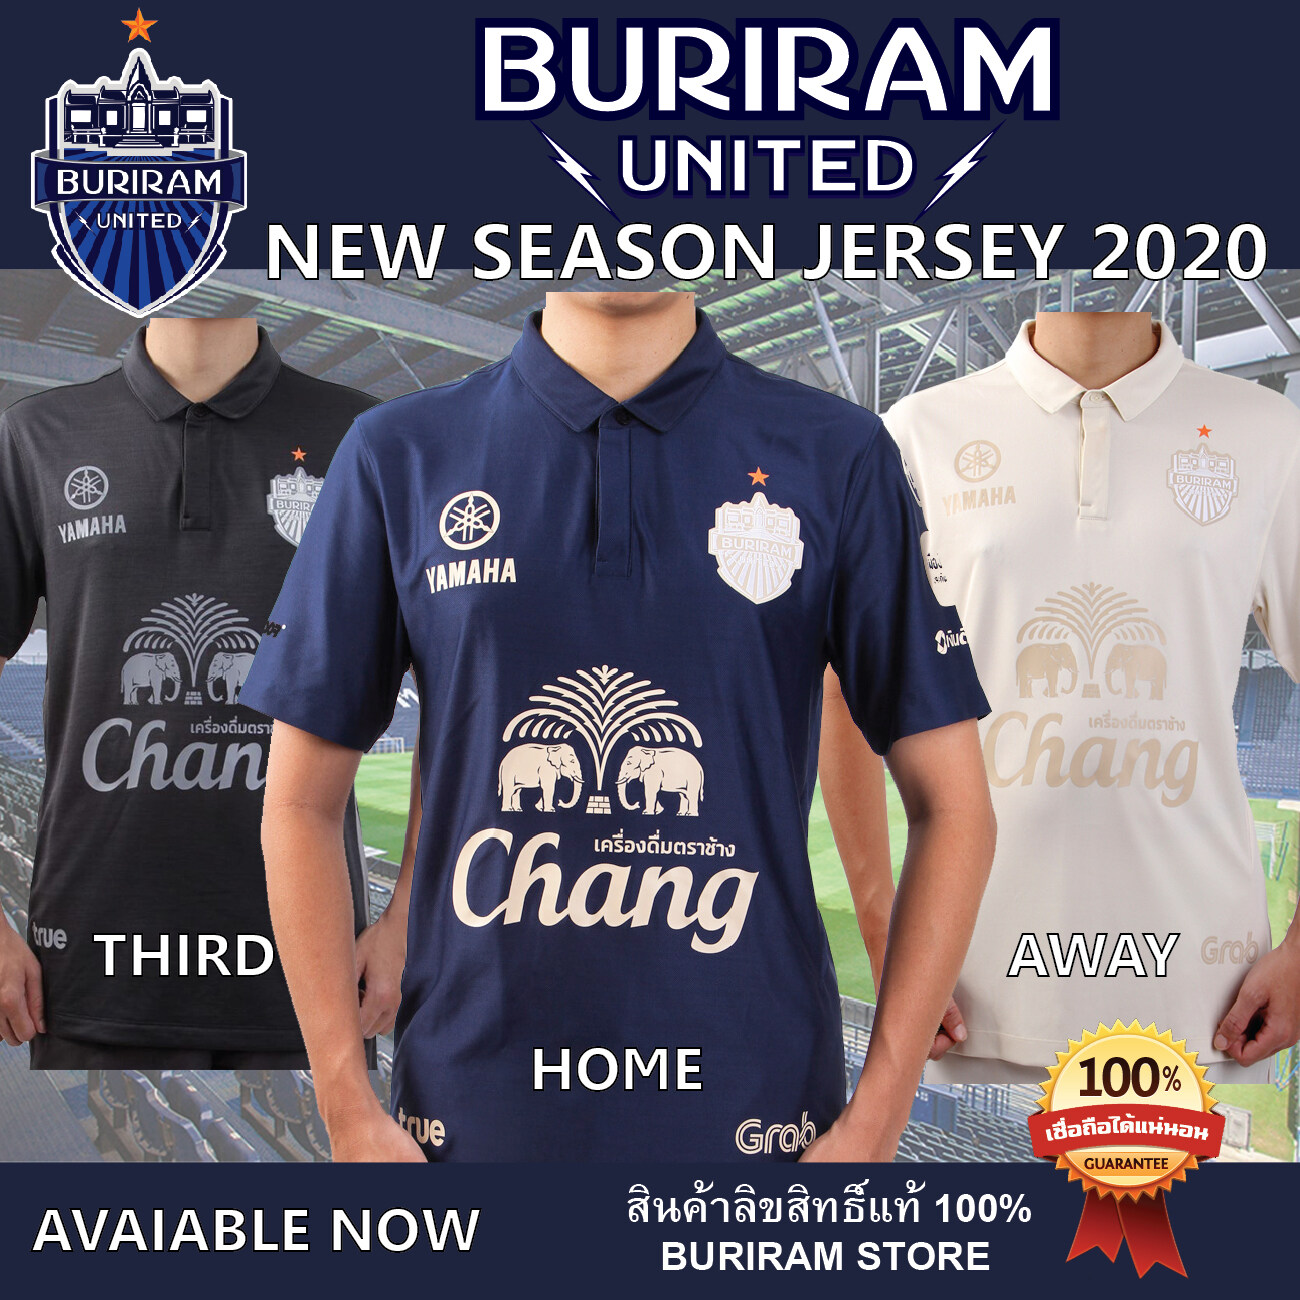 BURIRAM UNITED (สินค้าลิขสิทธิ์แท้) เสื้อแข่งสโมสร บุรีรัมย์ ยูไนเต็ด 2020 - BURIRAM UNITED JERSEY 2020